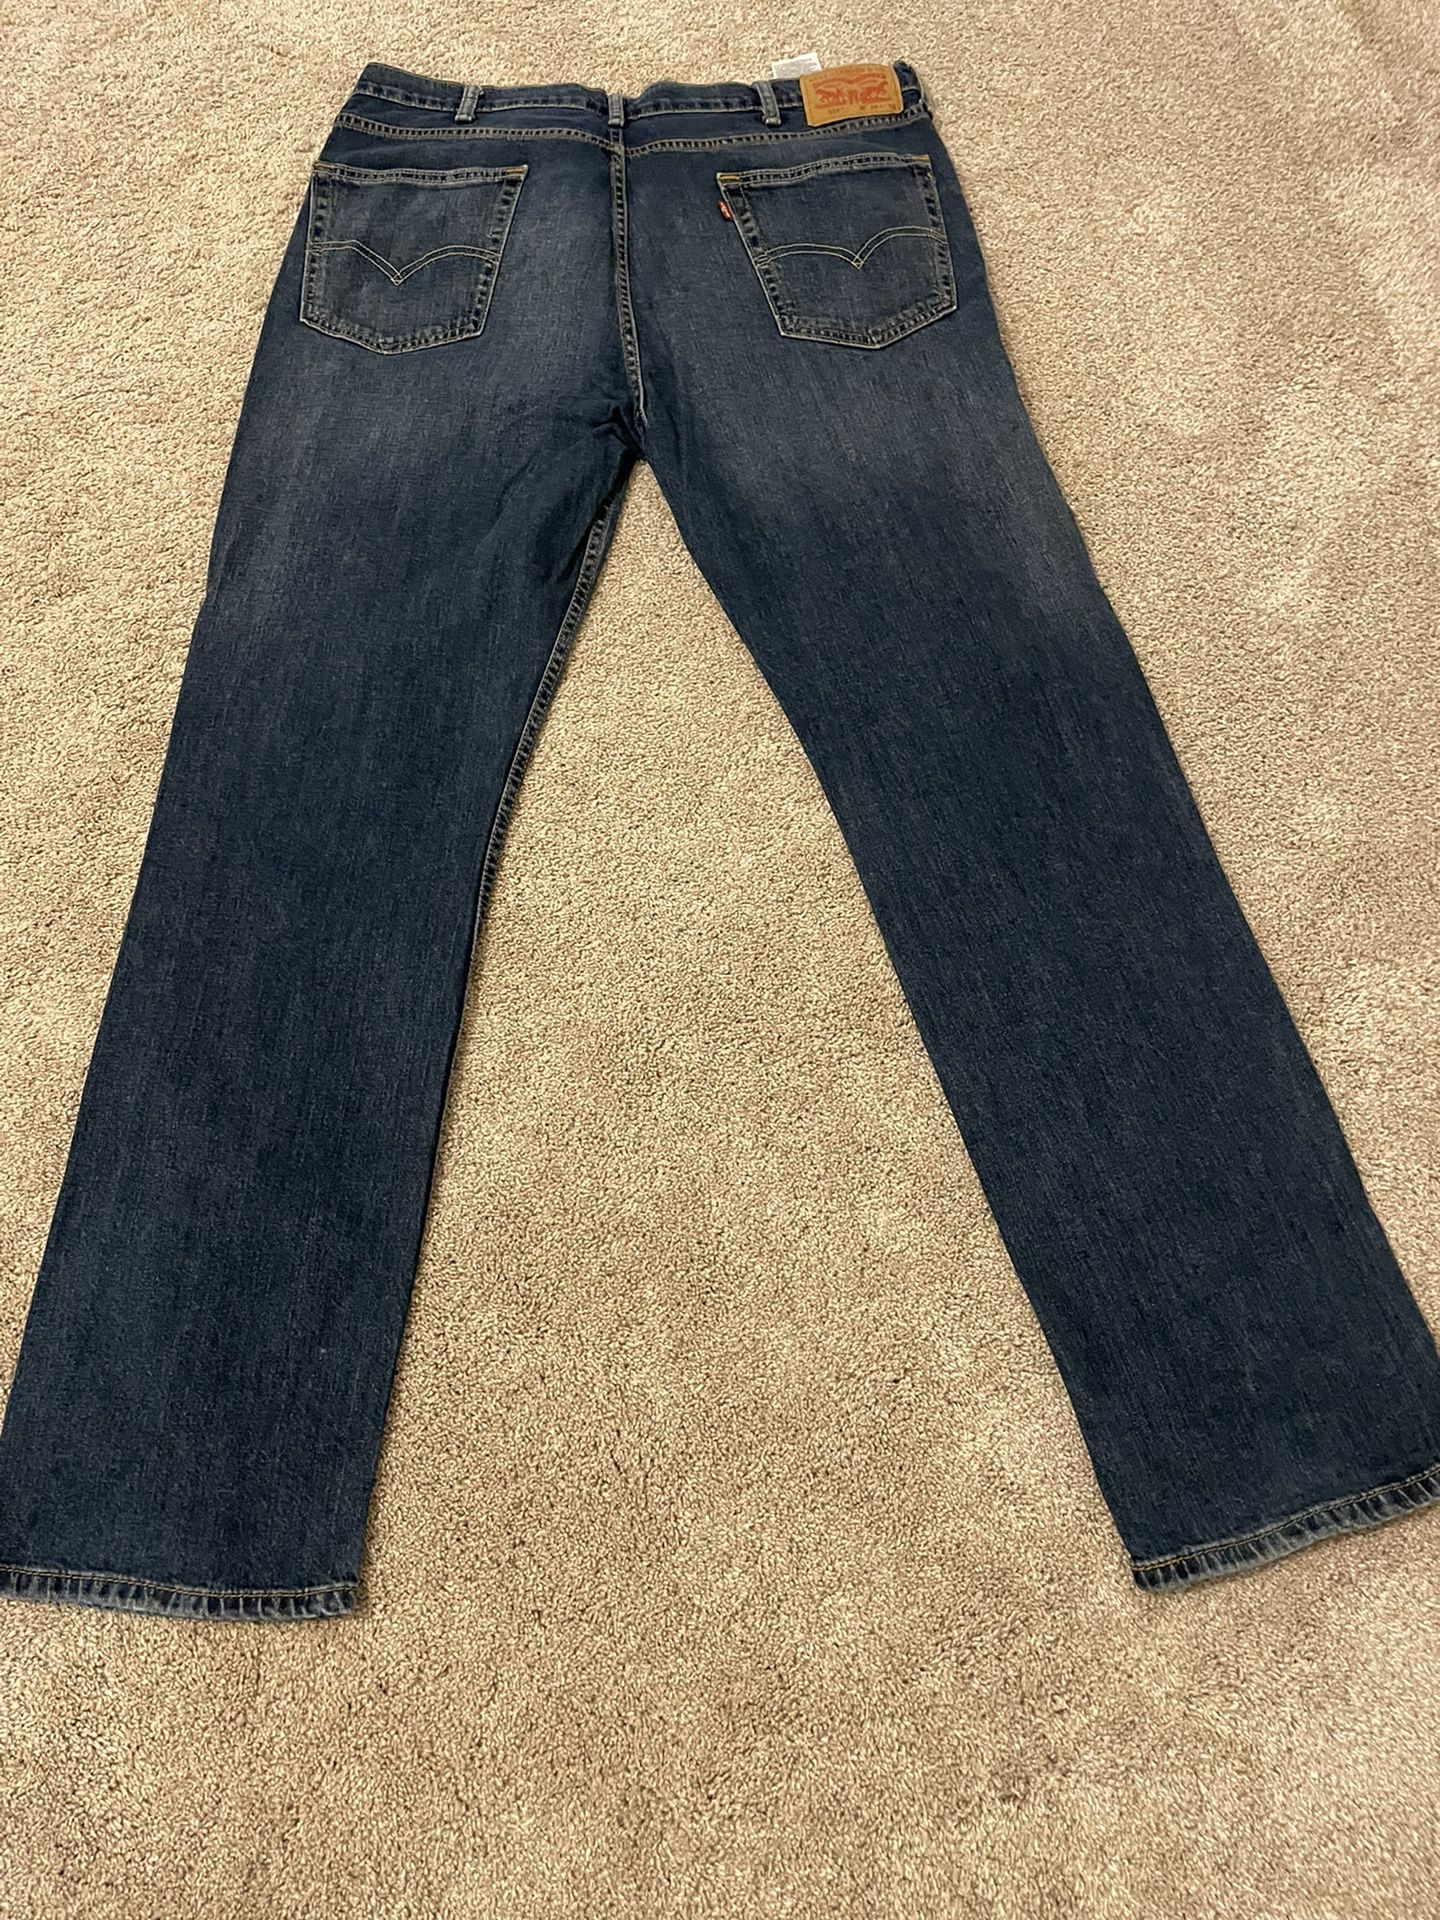 Levi’s Jeans 38x34 - 2 Pair